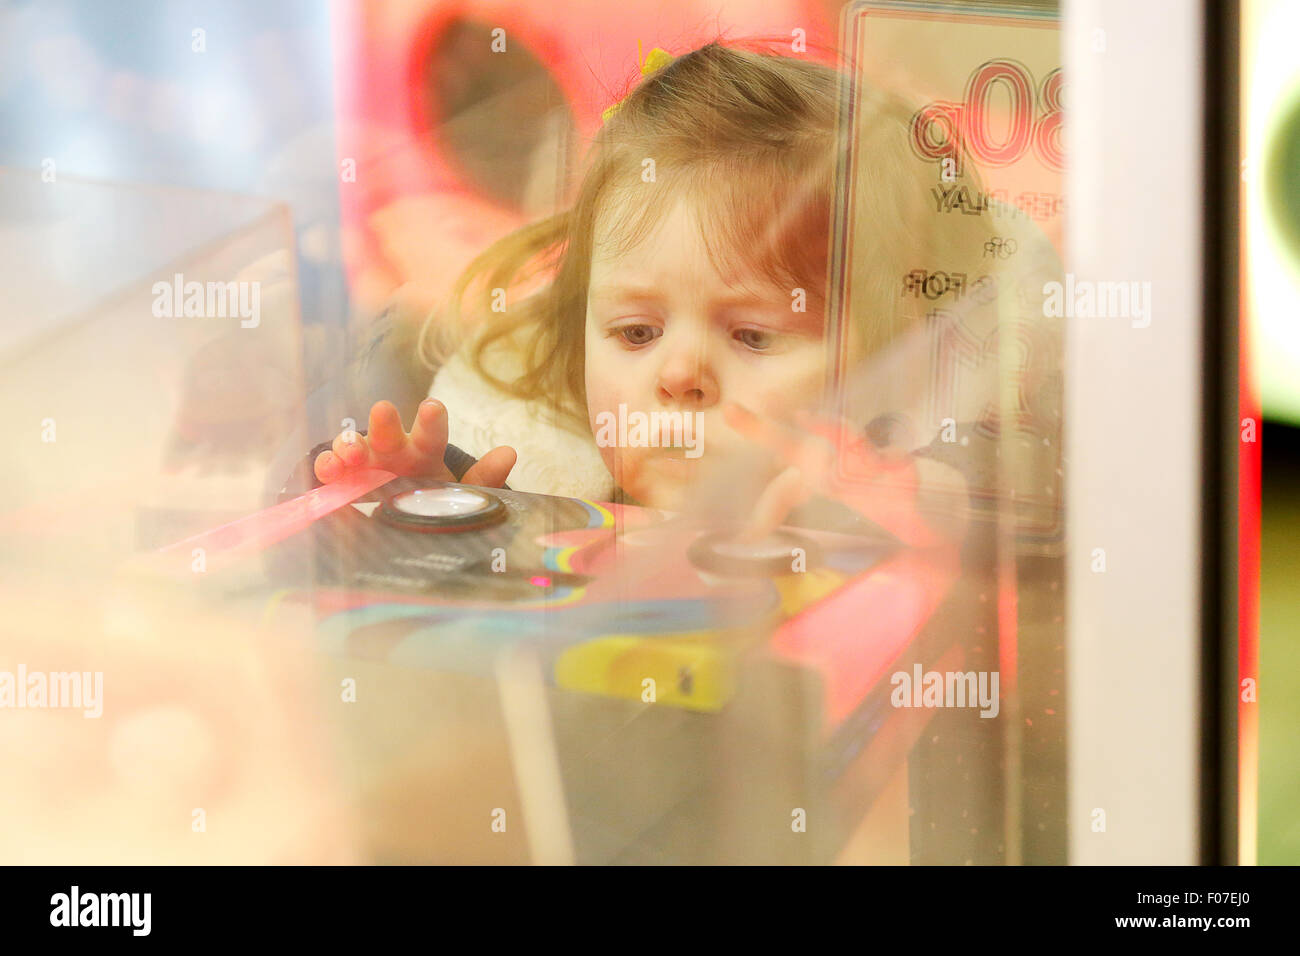 Ein Kind spielt auf einer Spielhalle Maschine Stockfoto